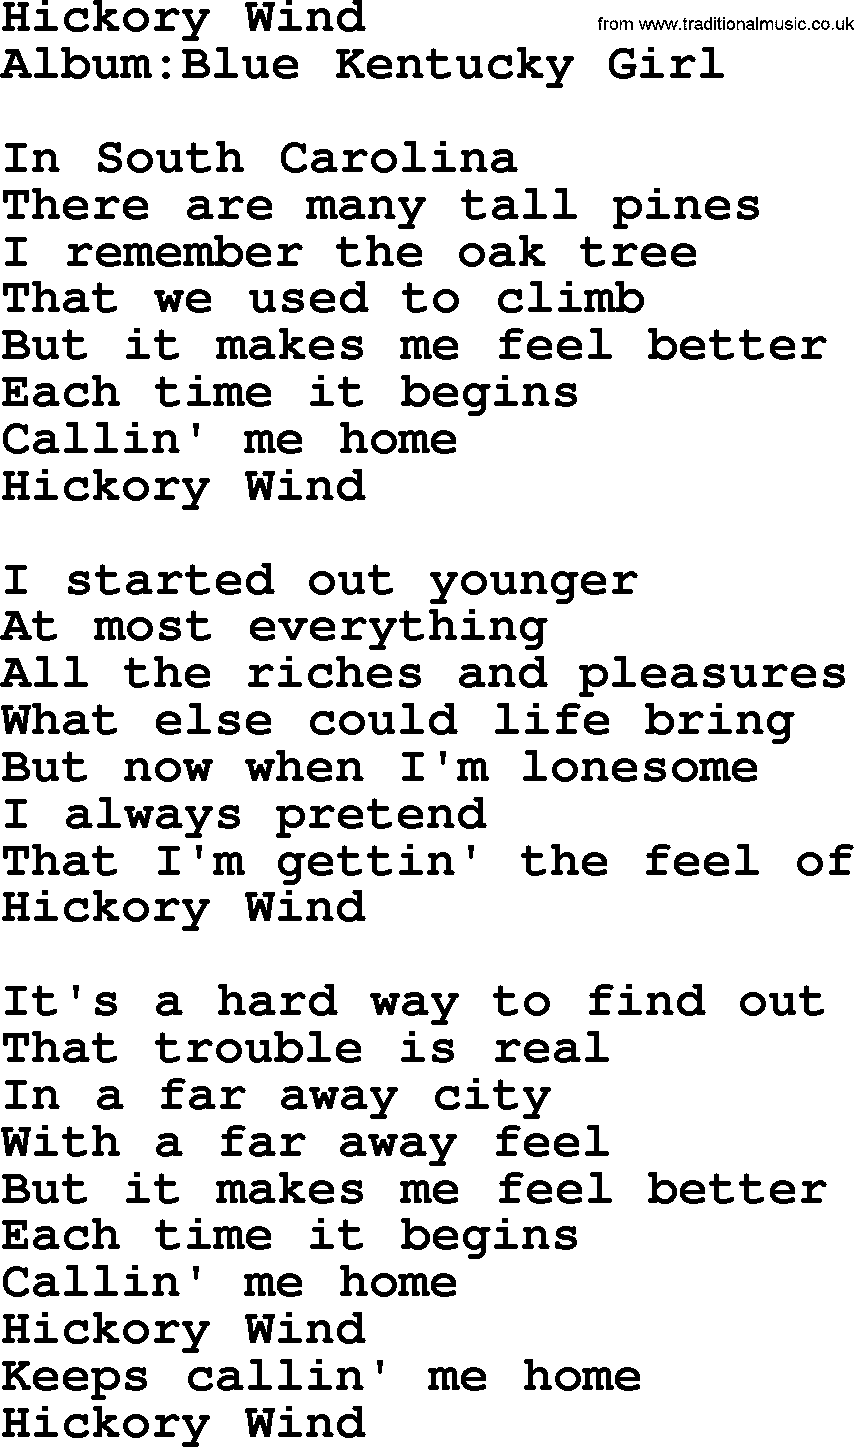 Emmylou Harris song: Hickory Wind lyrics